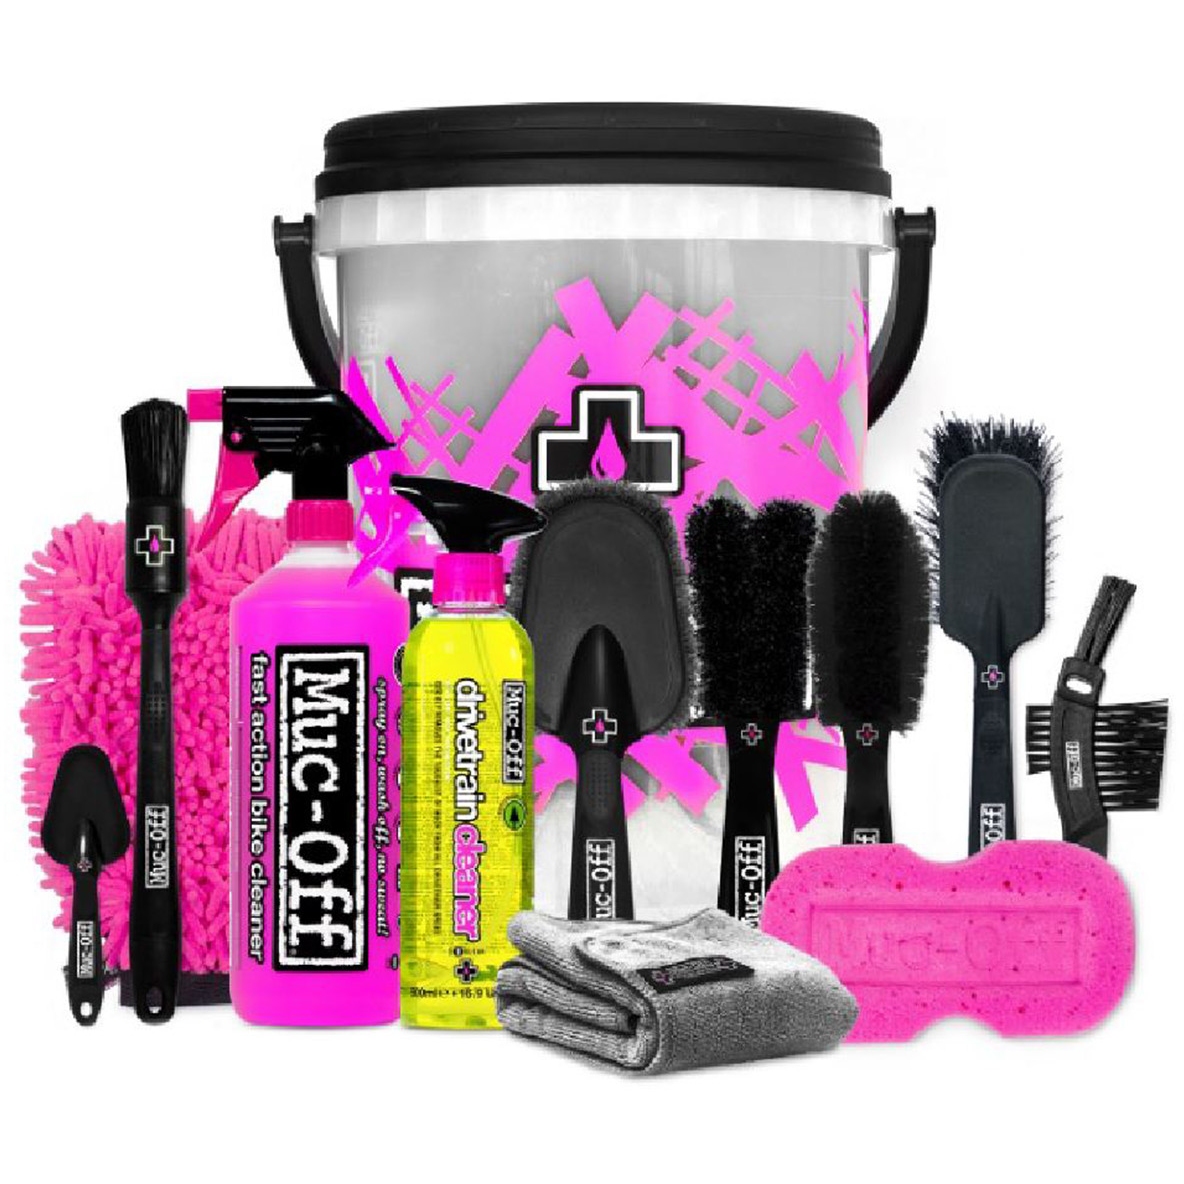 Productfoto van Muc-Off Deep Clean Bucket Kit Reinigingsset - zwart